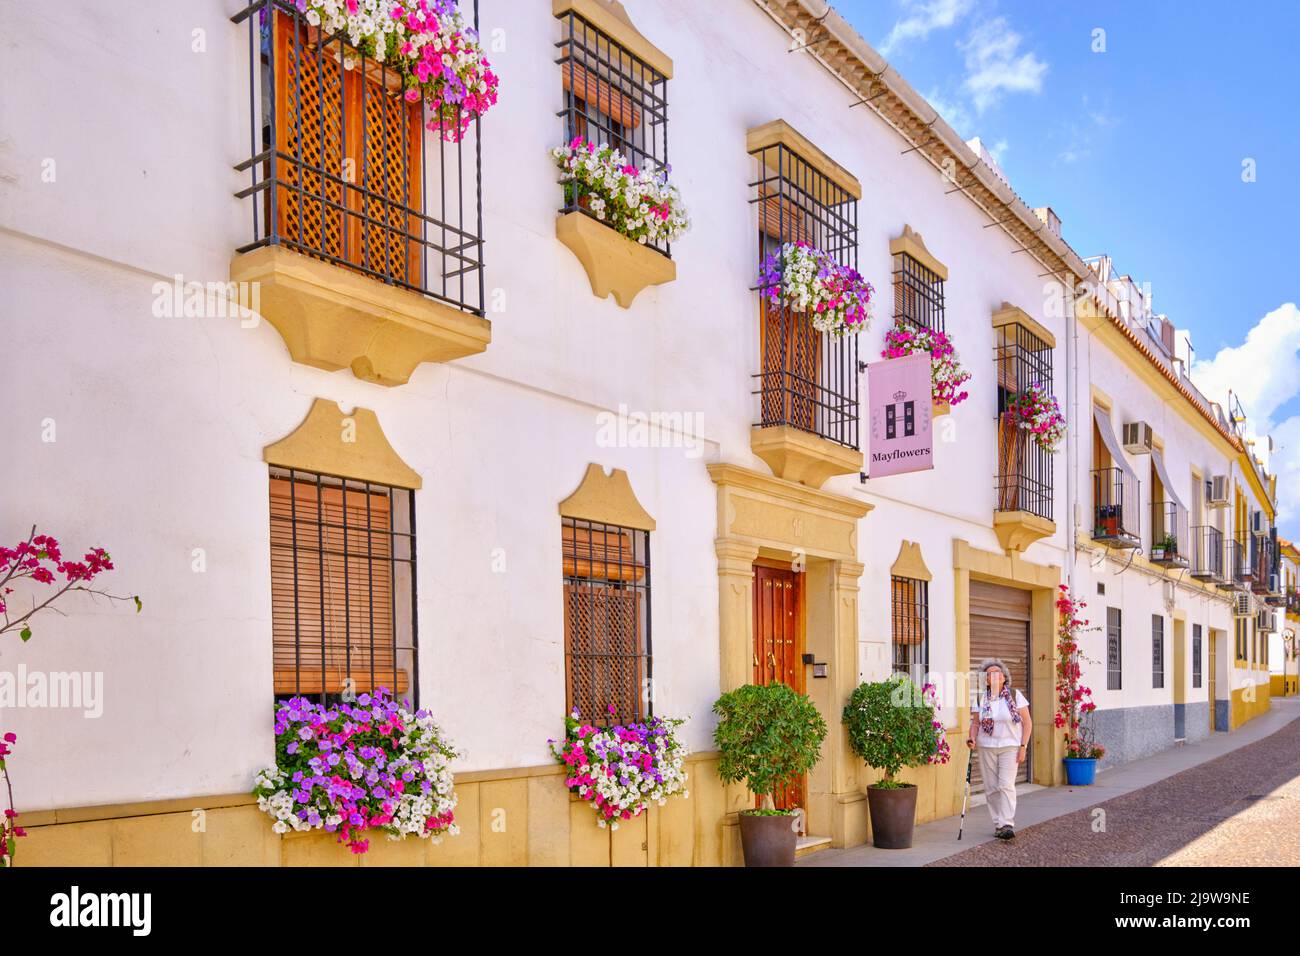 Maison du quartier de San Basilio, pleine de fleurs. Cordoue, Andalousie. Espagne (MR) Banque D'Images